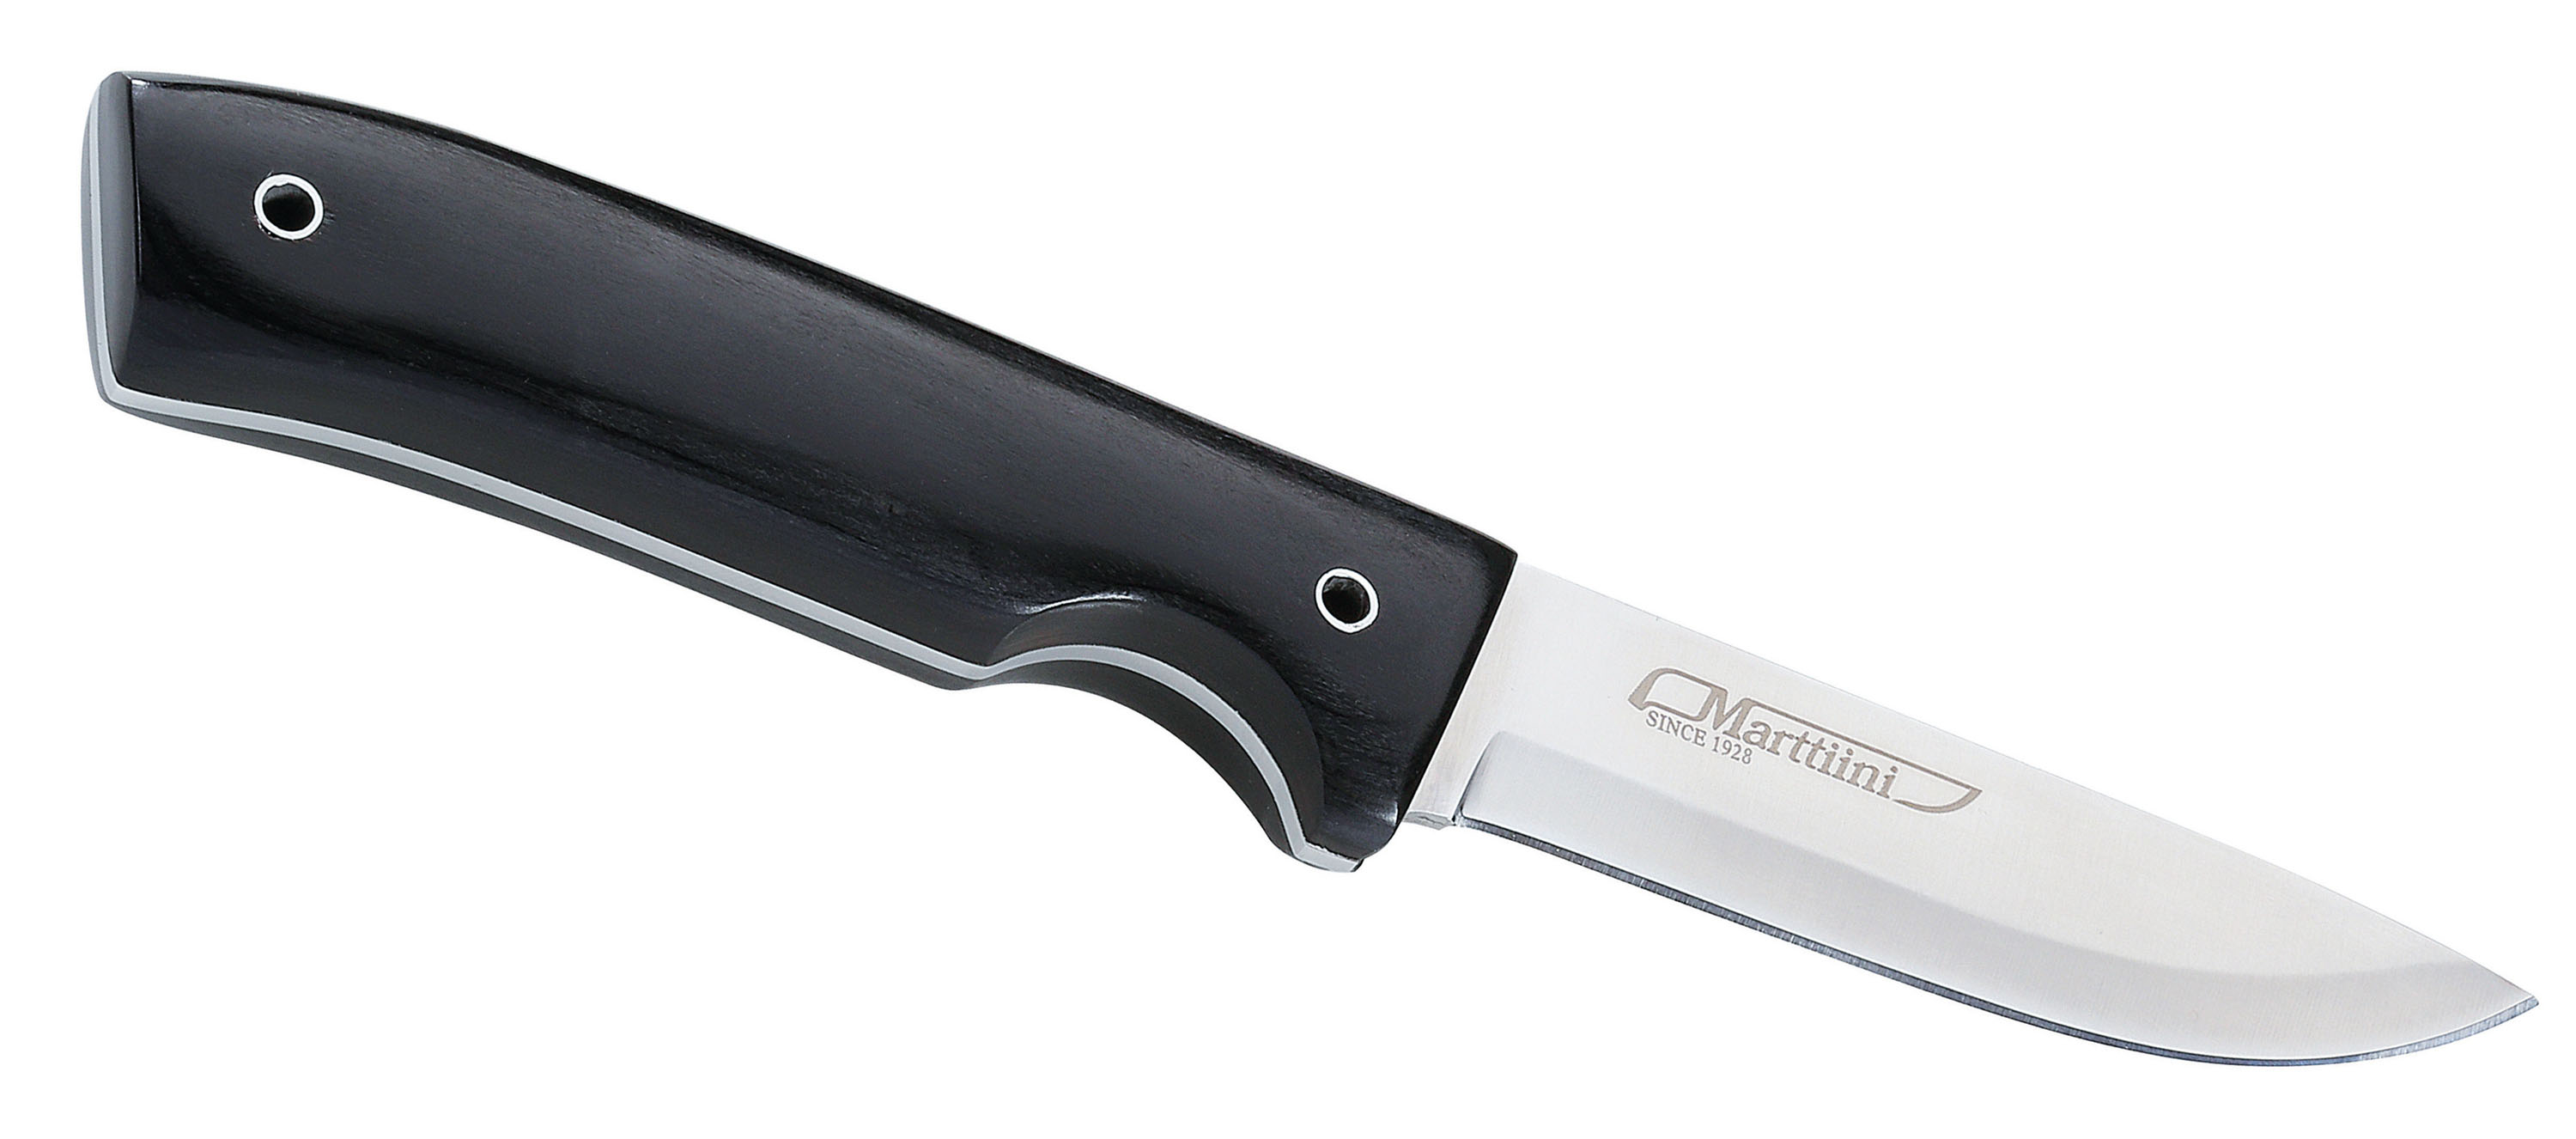 MARTTIINI Messer Raven–Scharfes Ding. Ein richtiges Werkzeug für unterwegs. Robuste durchgehende Klinge ,sauscharf ,mitFingermulde als Schutz .€77,60 © Martiini